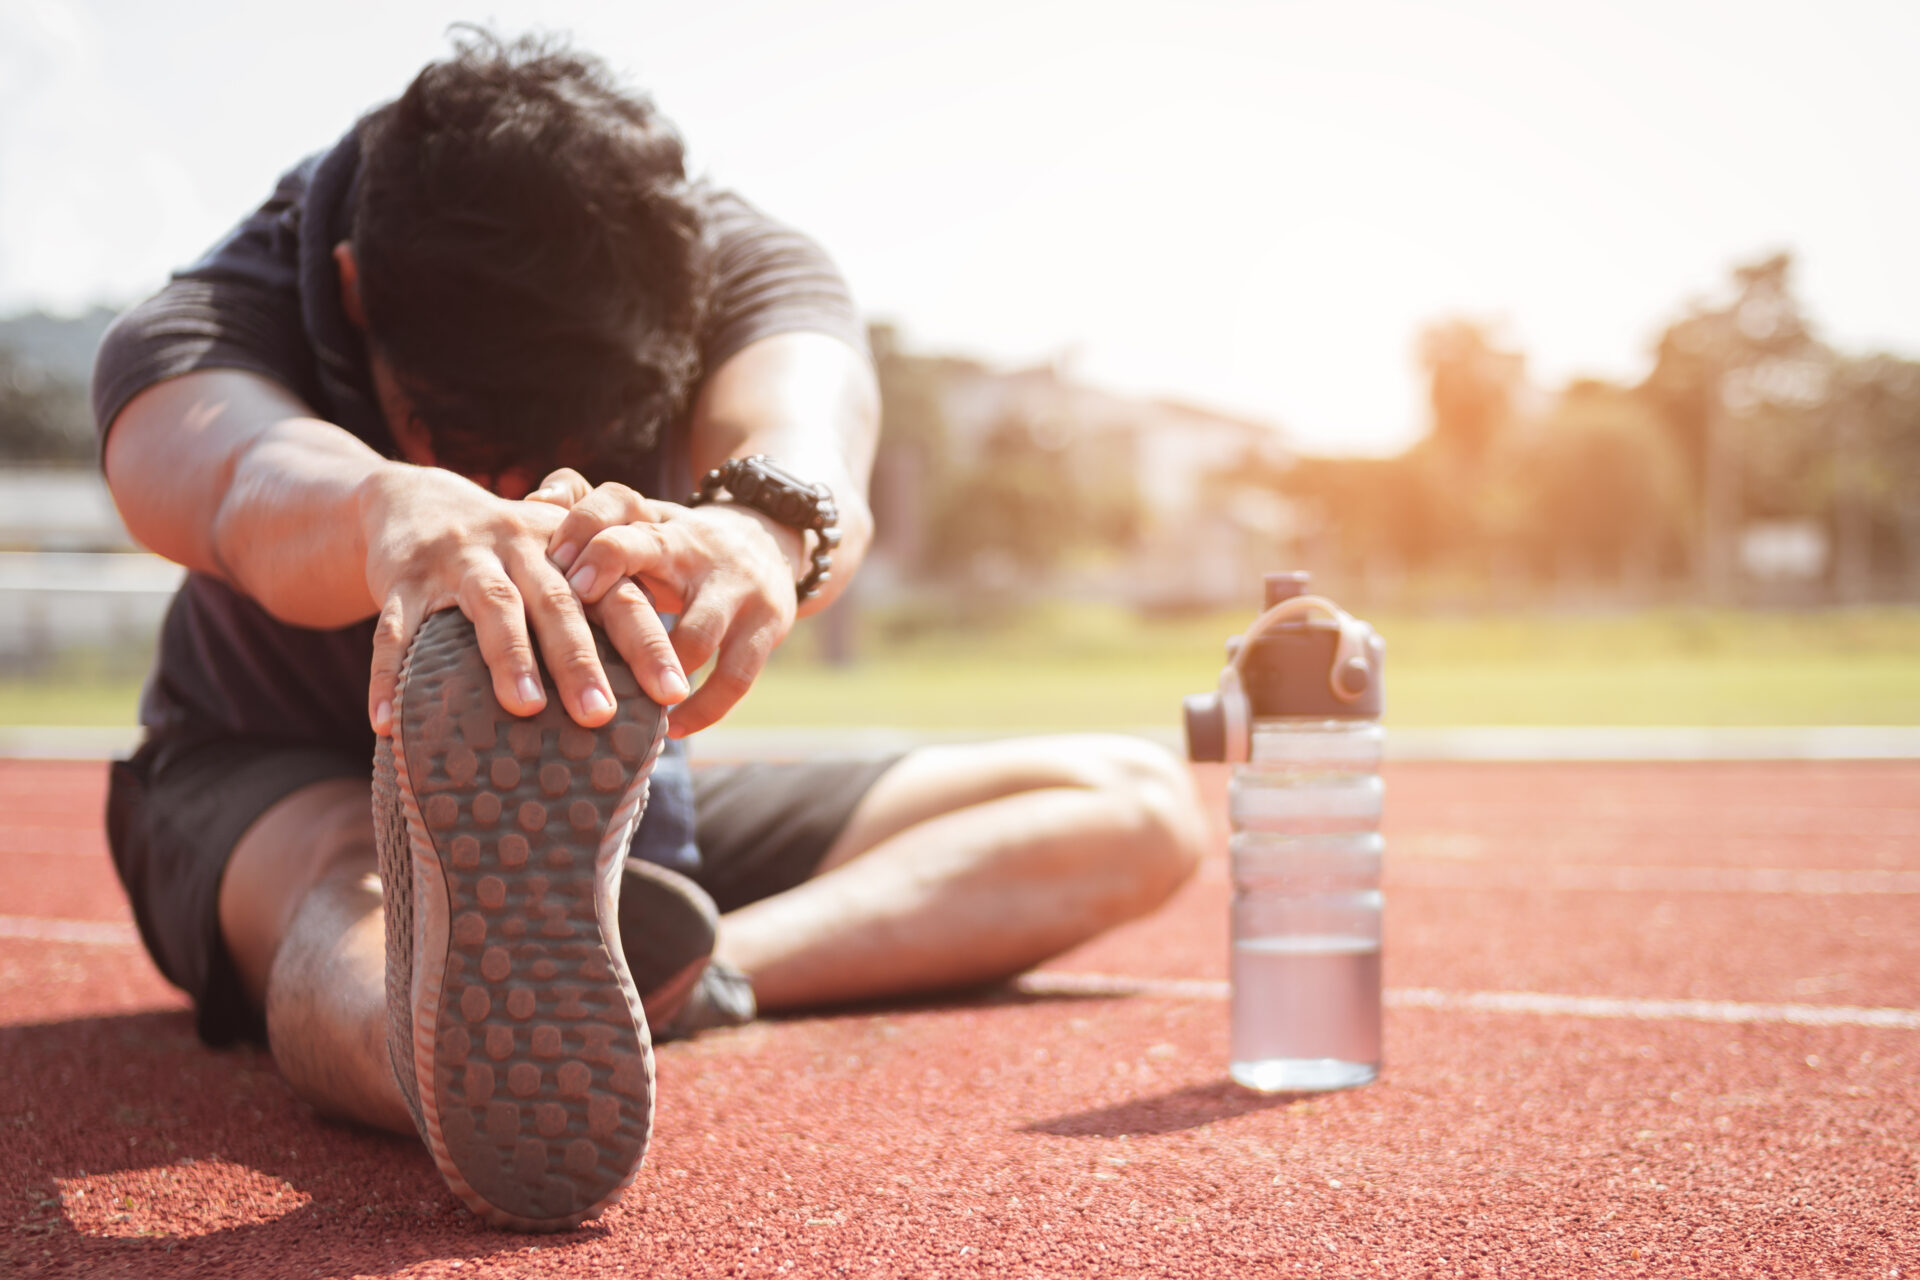 Un homme assis sur une piste d'athlétisme faisant des étirements d'ischio-jambiers et mollets